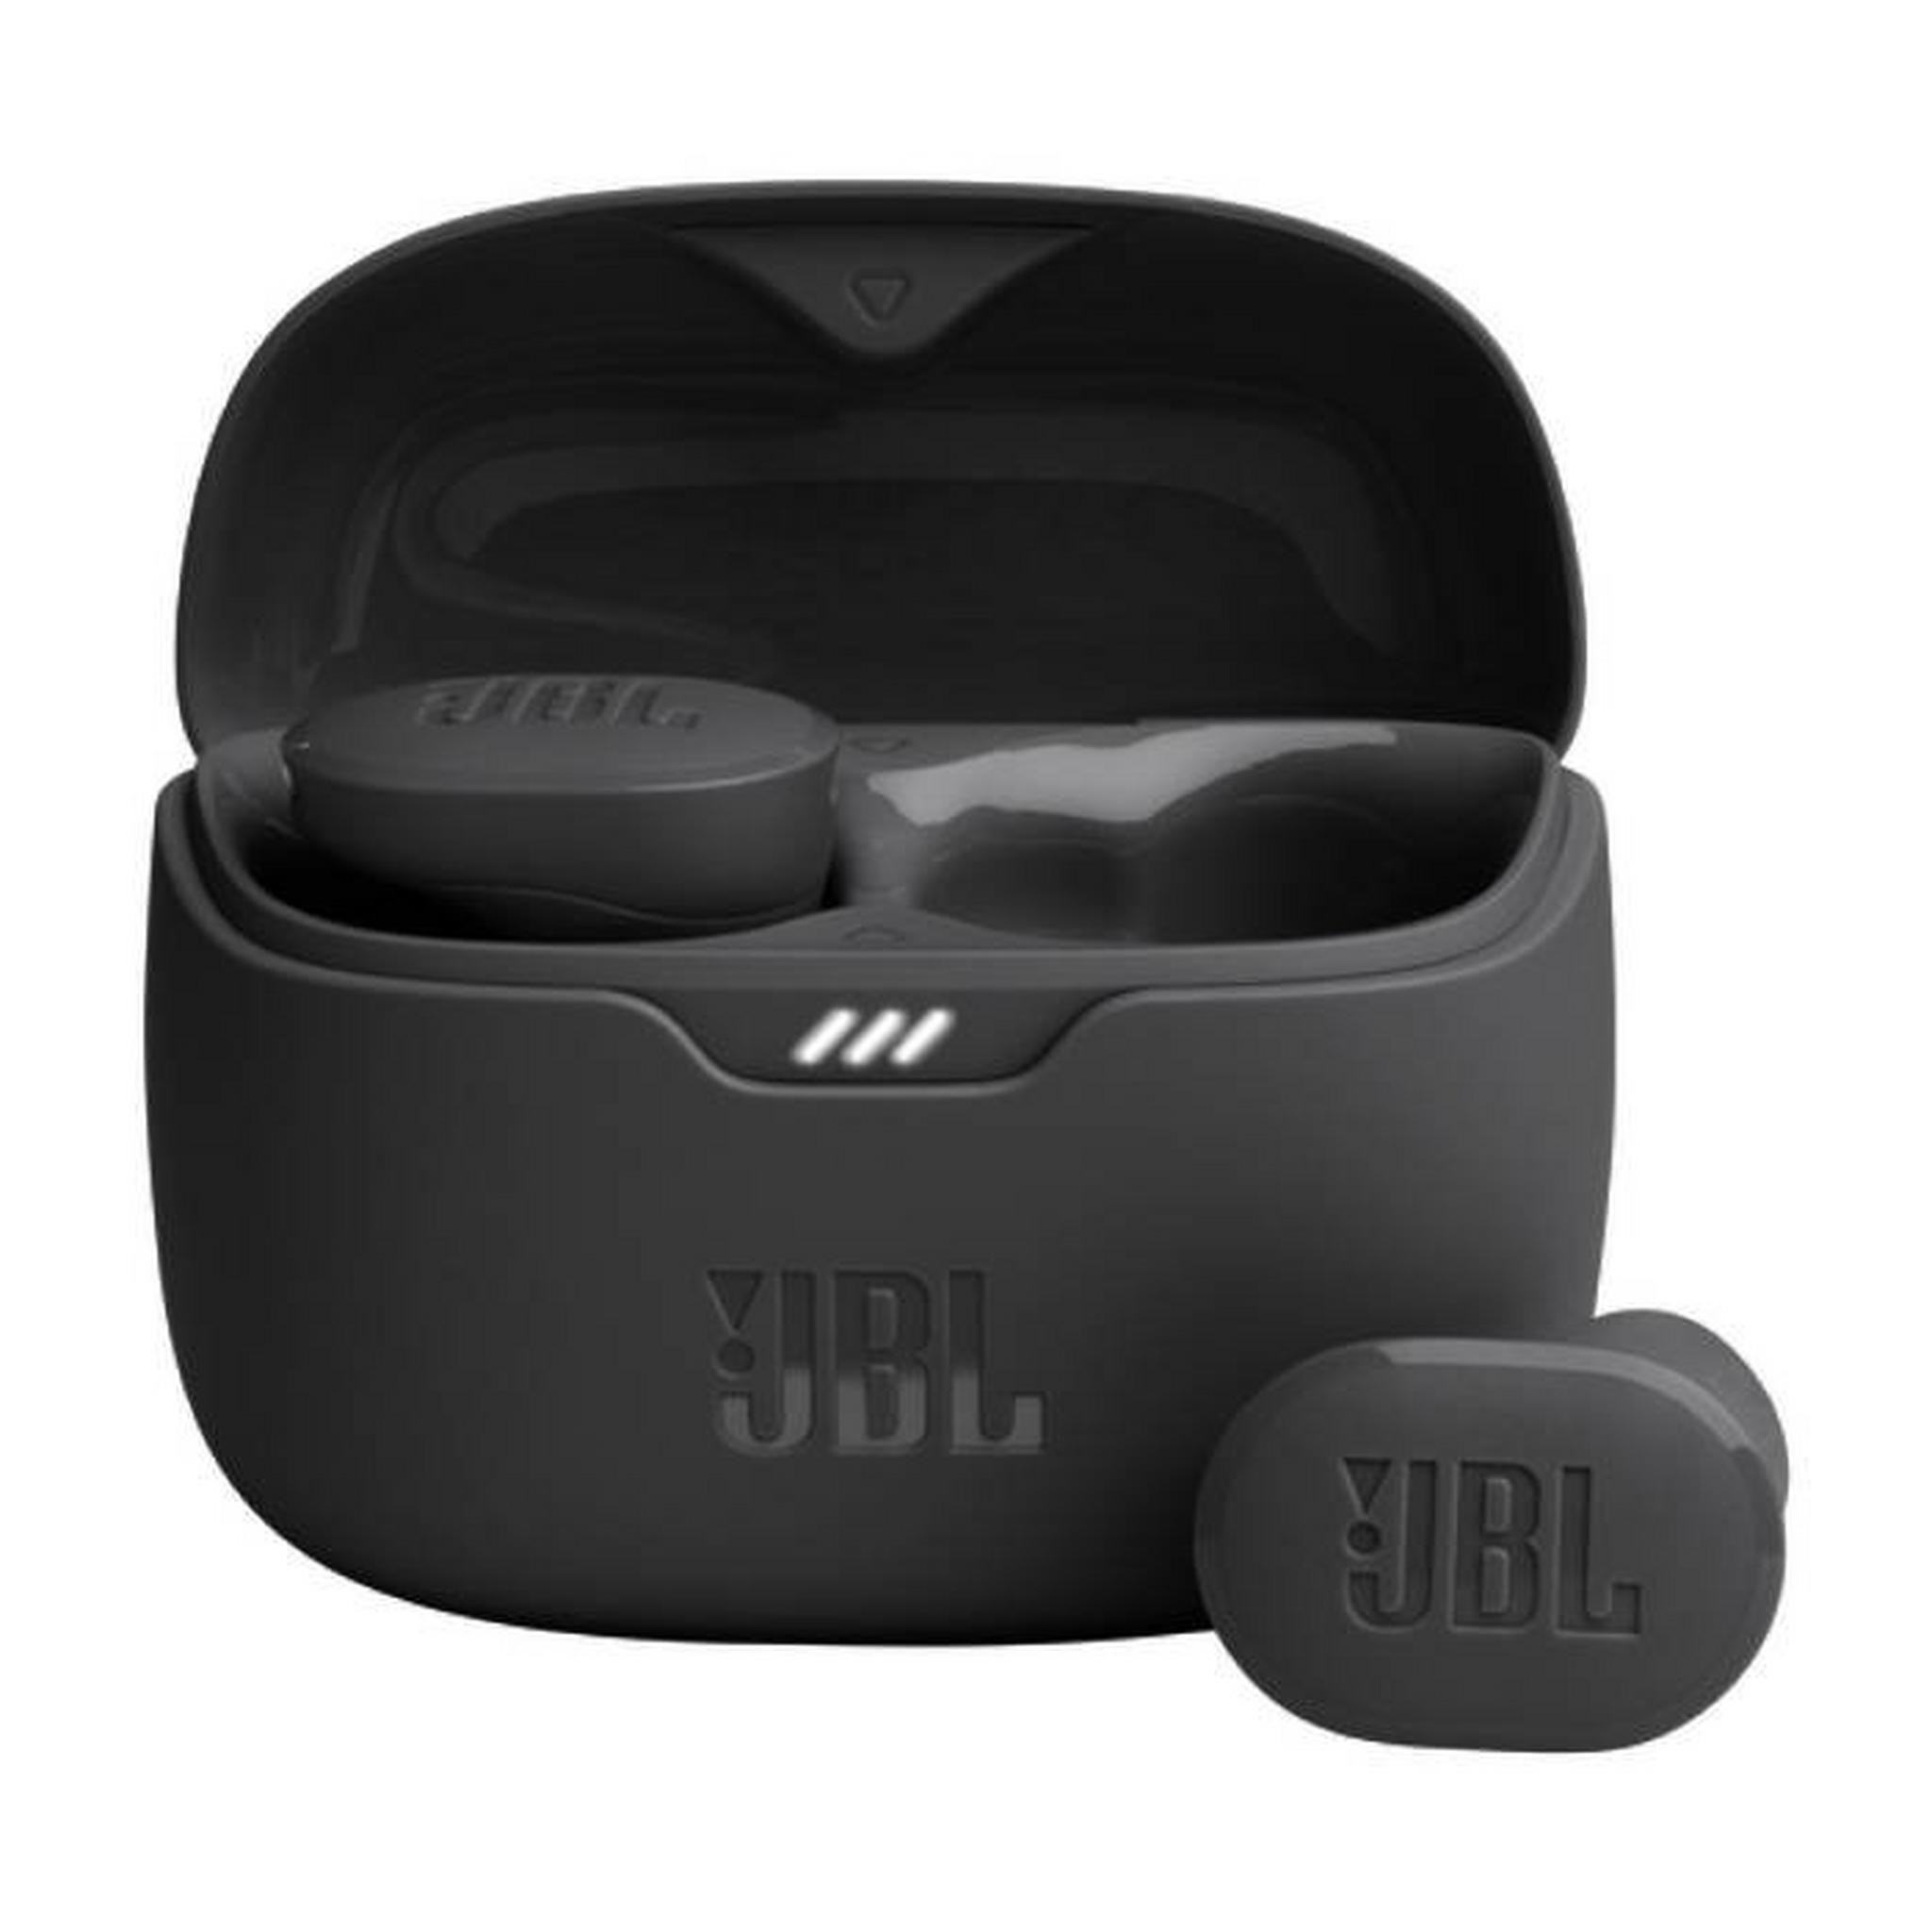 JBL Tune Buds True Wireless Noise Cancellation Earphones JBLTBUDSBLK  Black